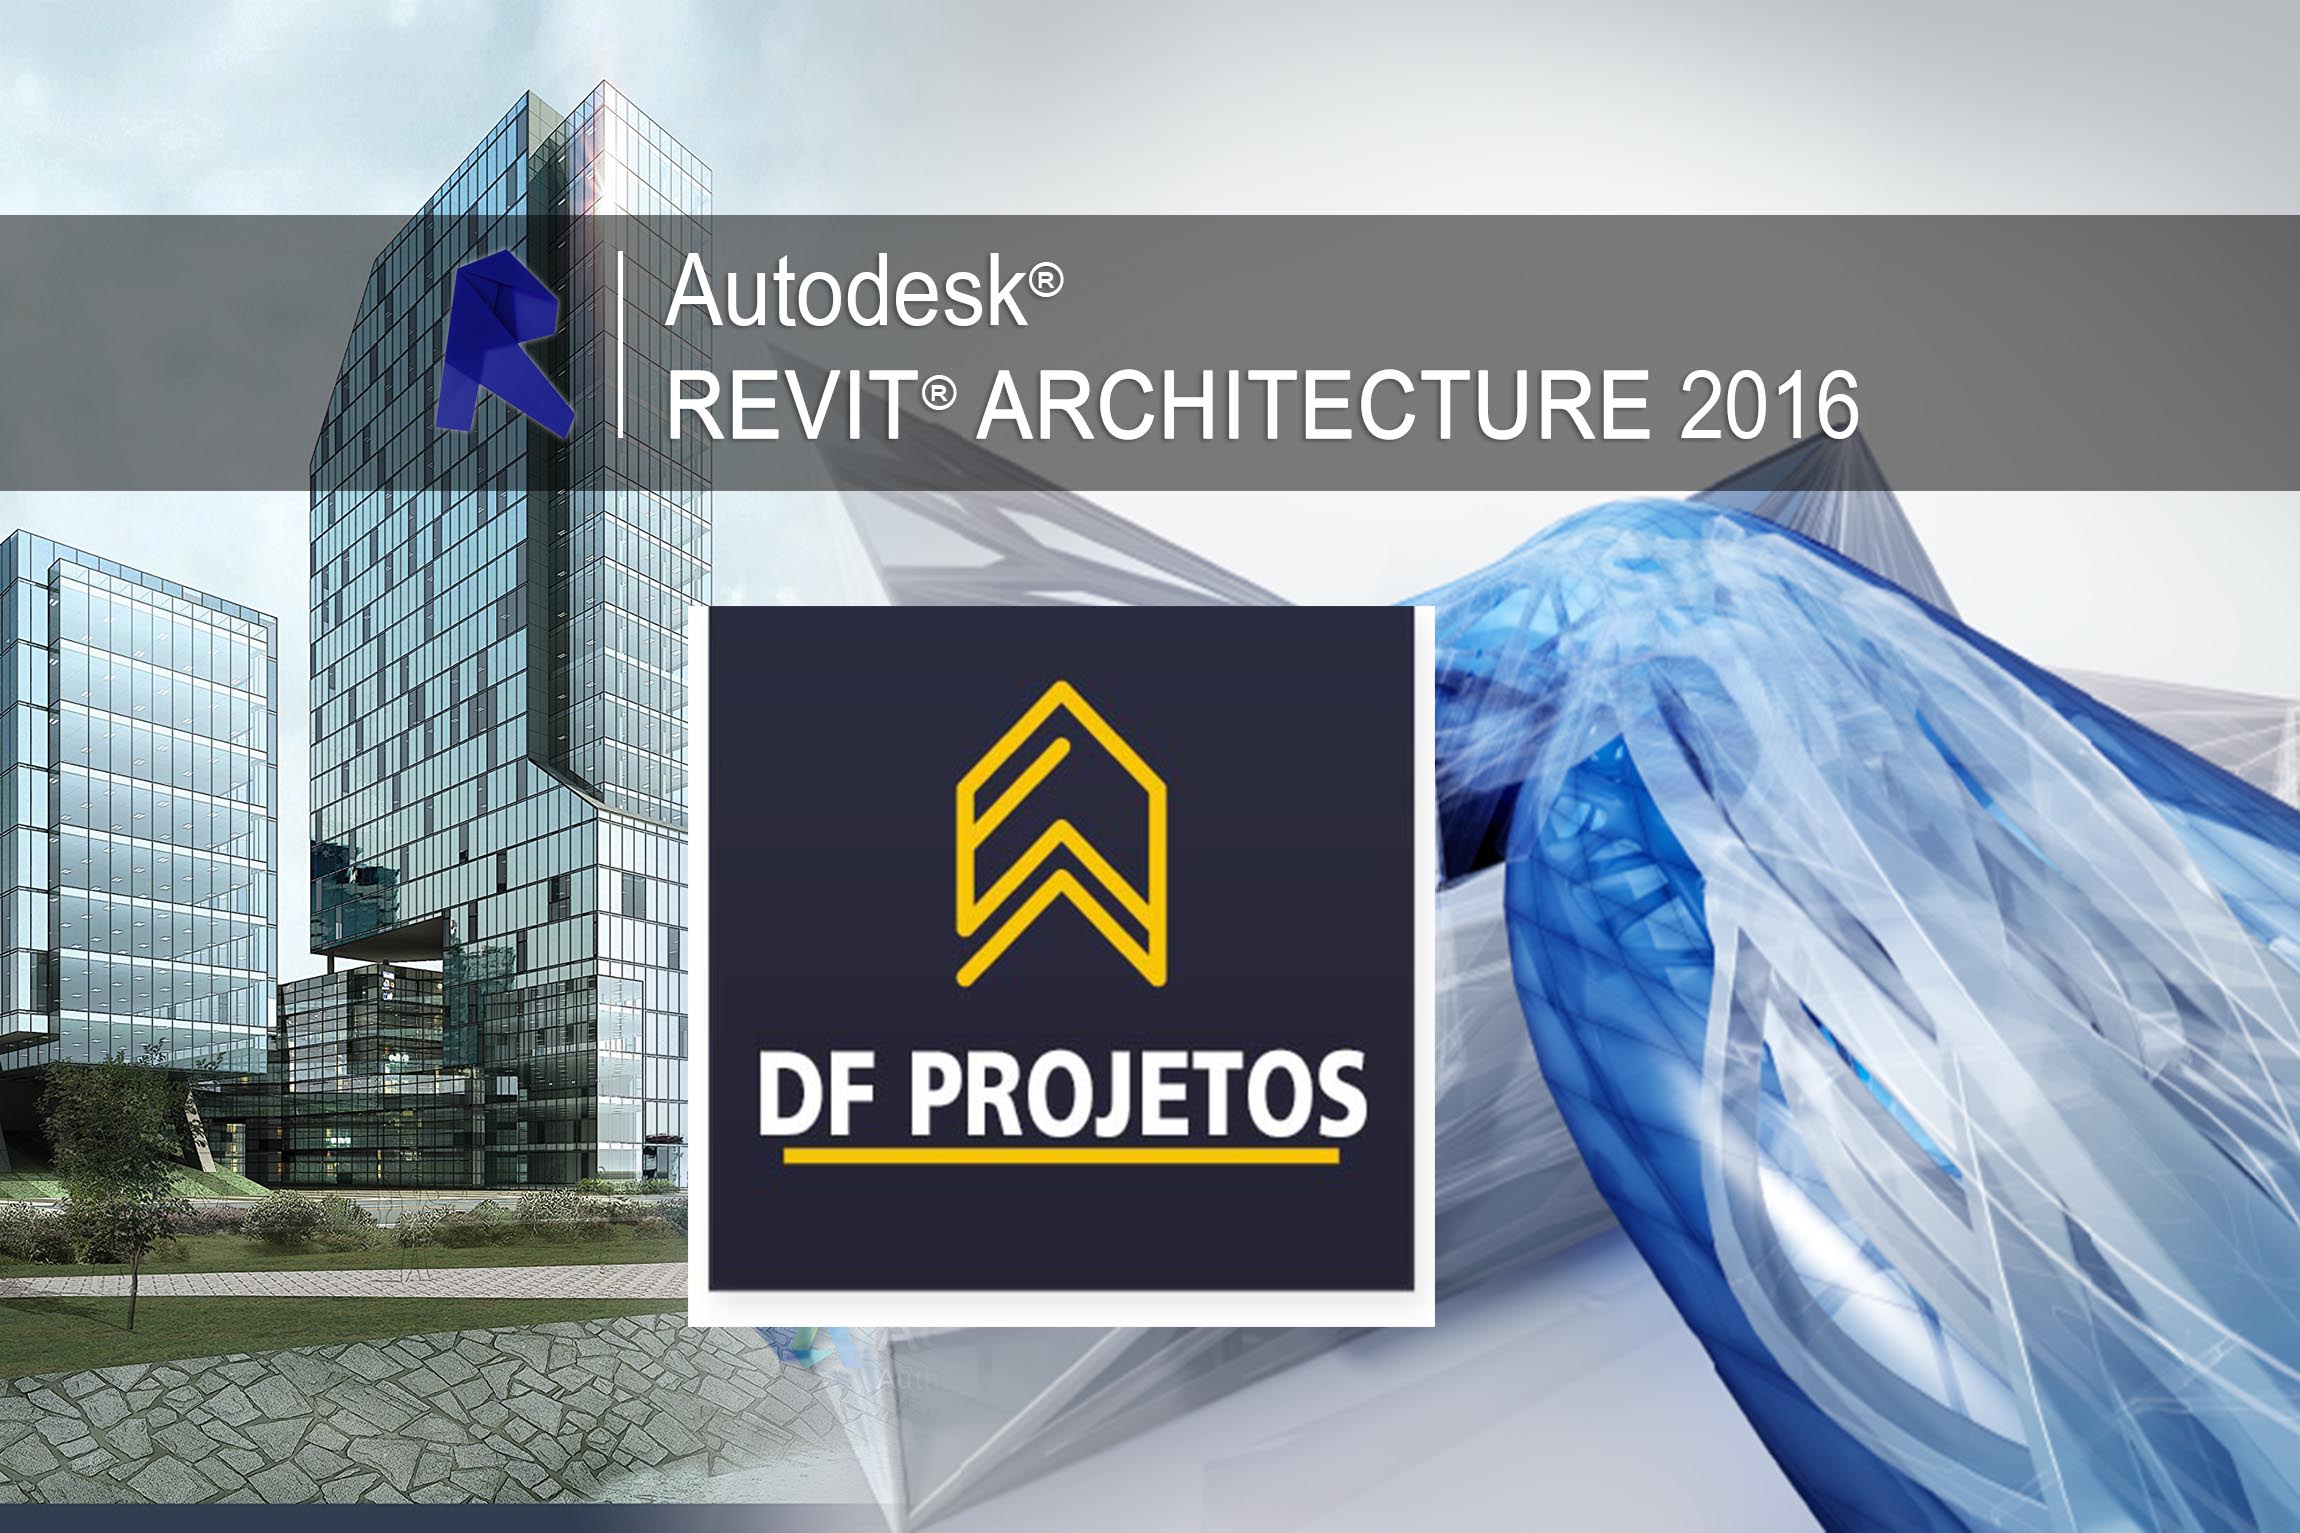 Download Autodesk Revit Architecture 2016 key